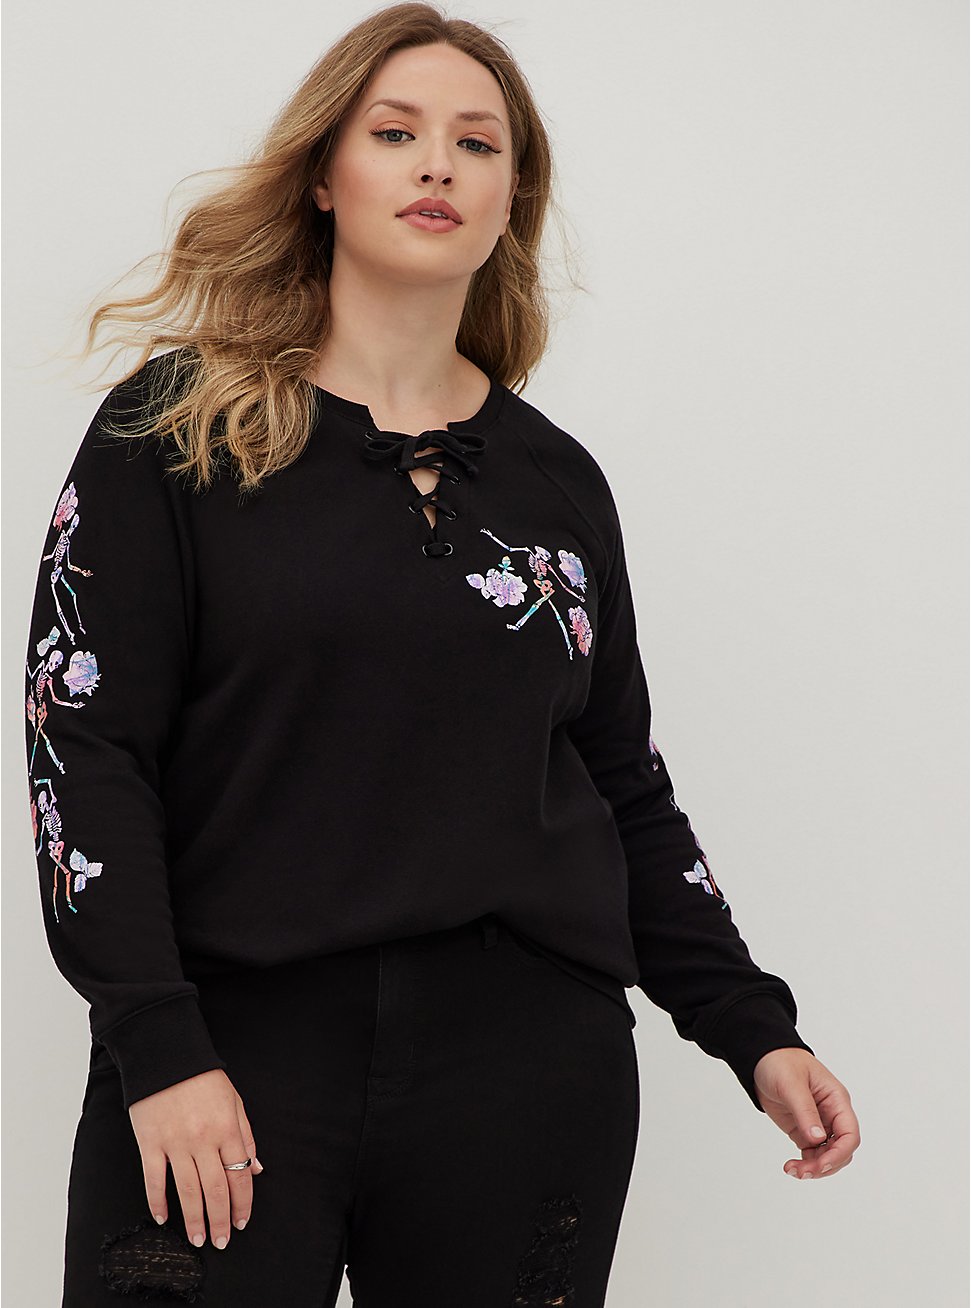 Plus Size Lace-Up Sweatshirt - Cozy Fleece Floral Skeleton Black, DEEP BLACK, hi-res